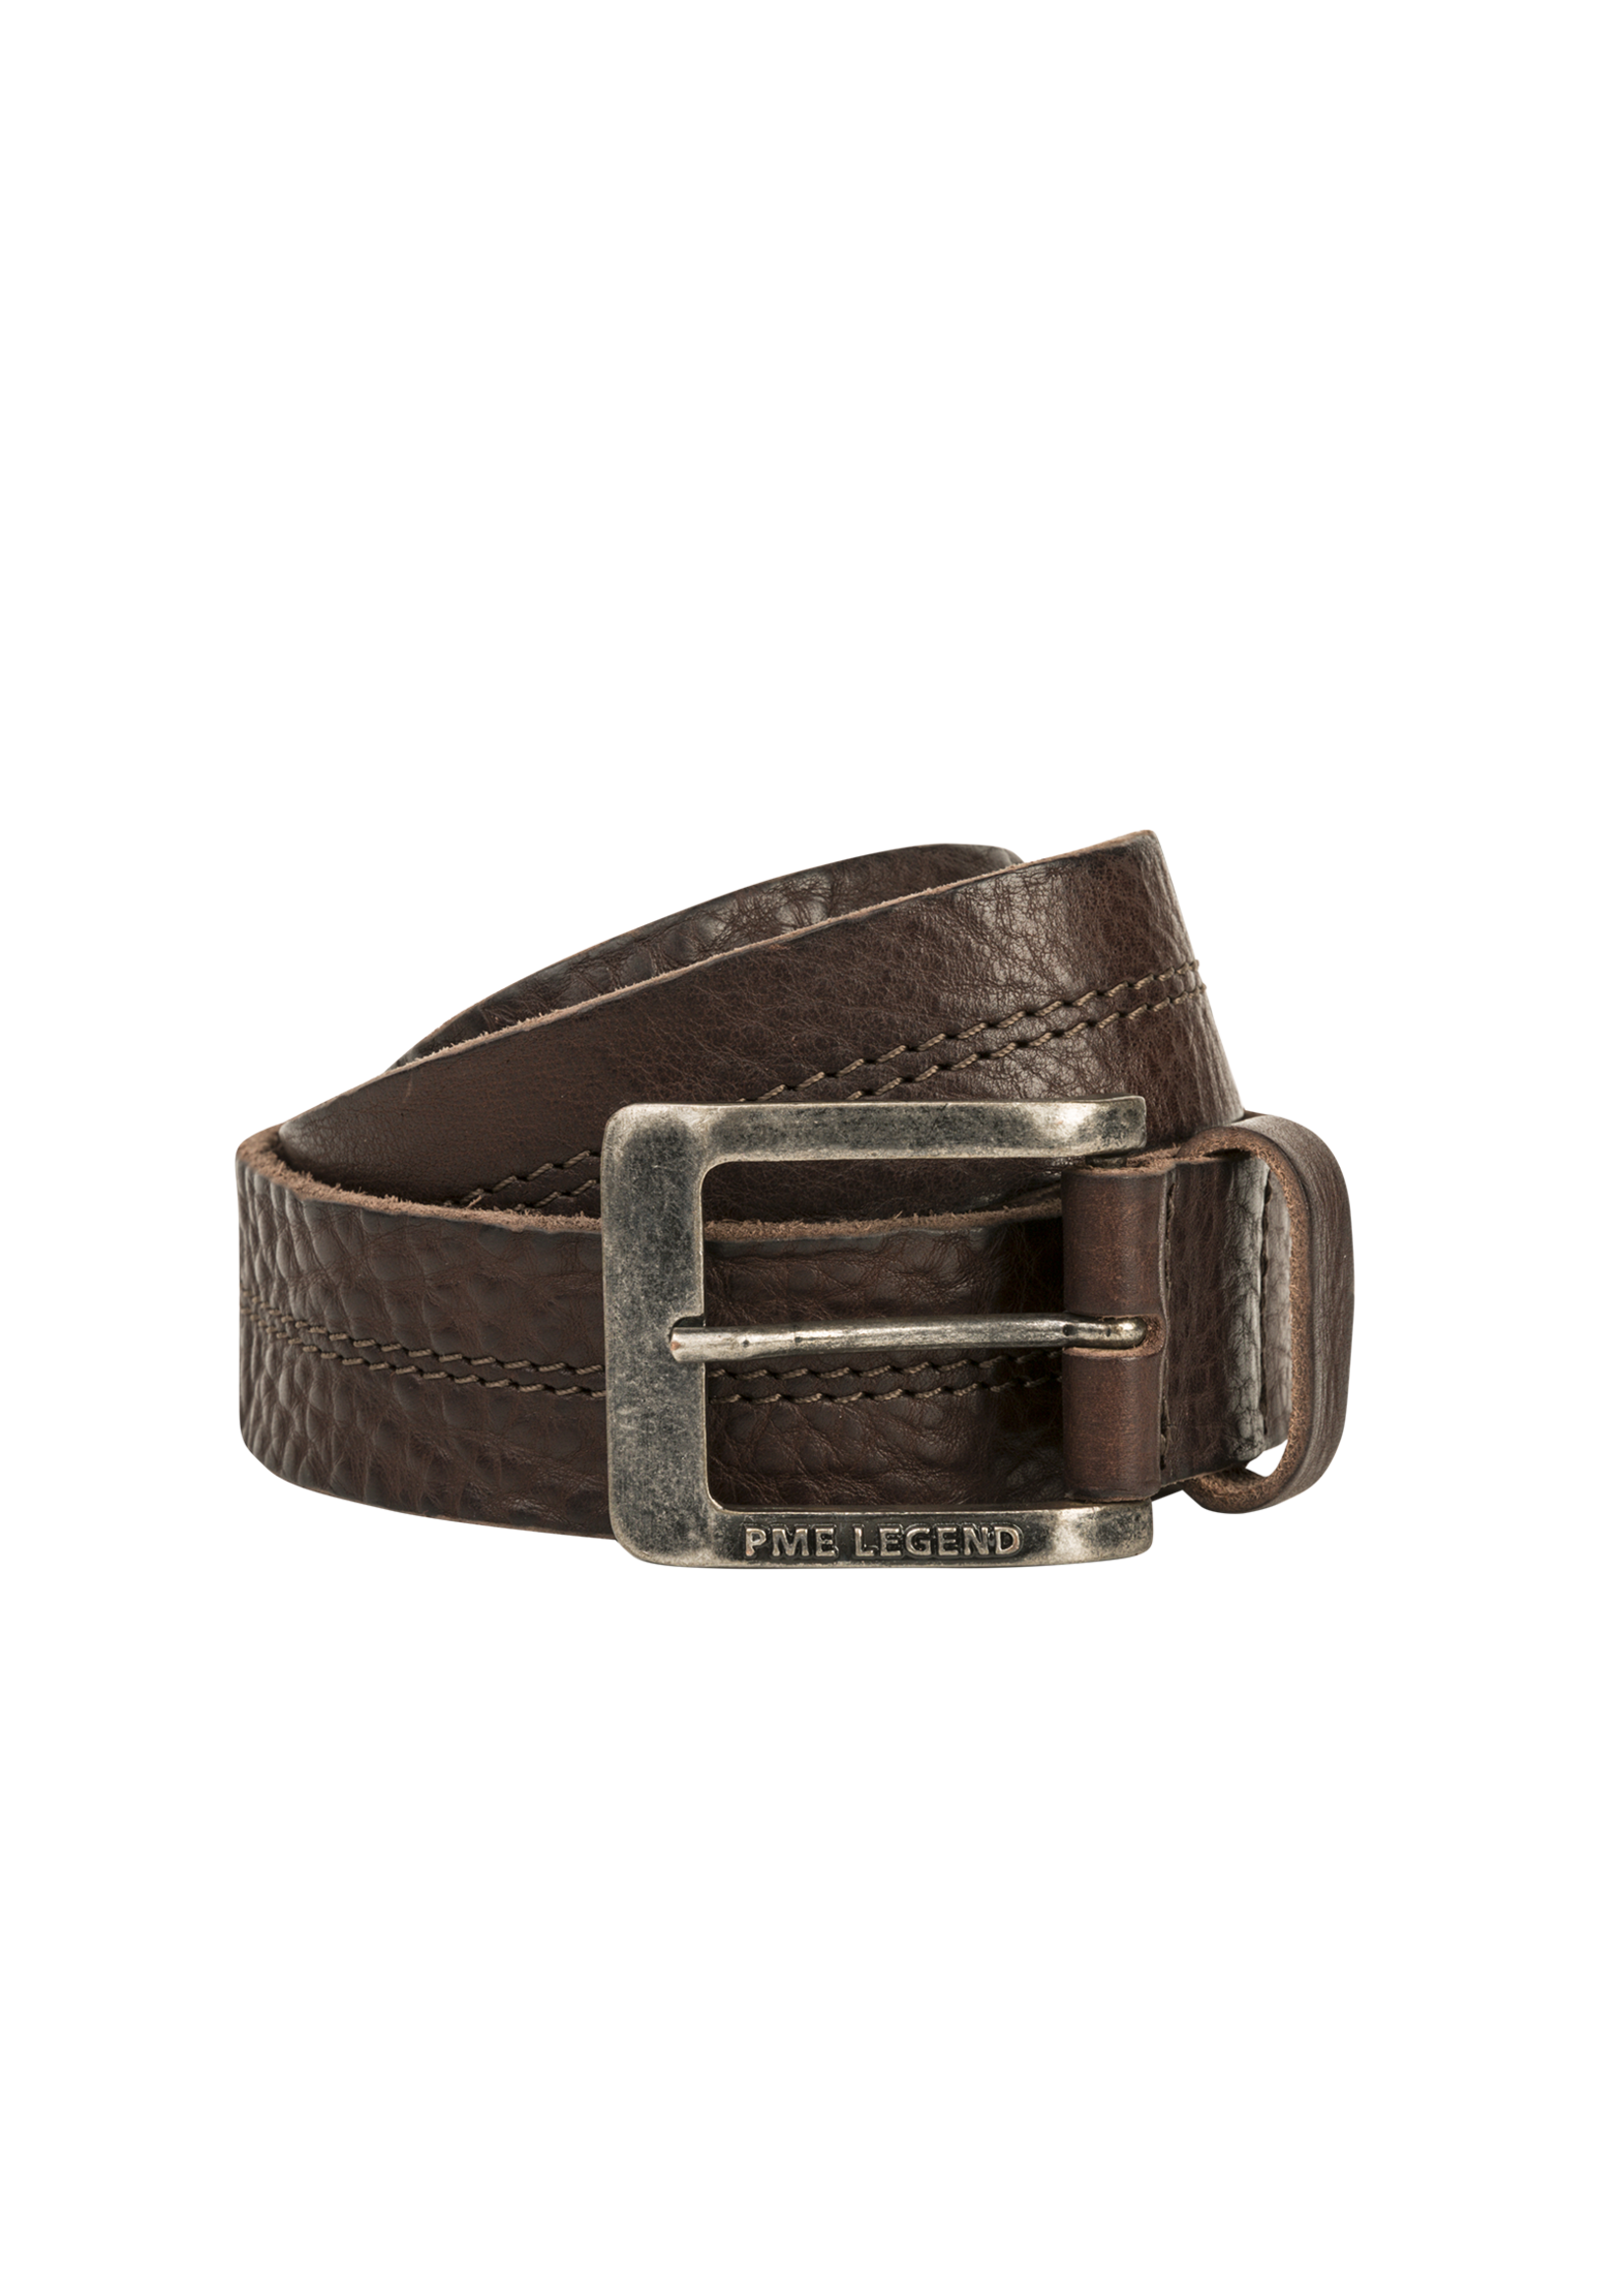 PME-Legend Belt Leather Dark Brown Stitching PBE00112/771